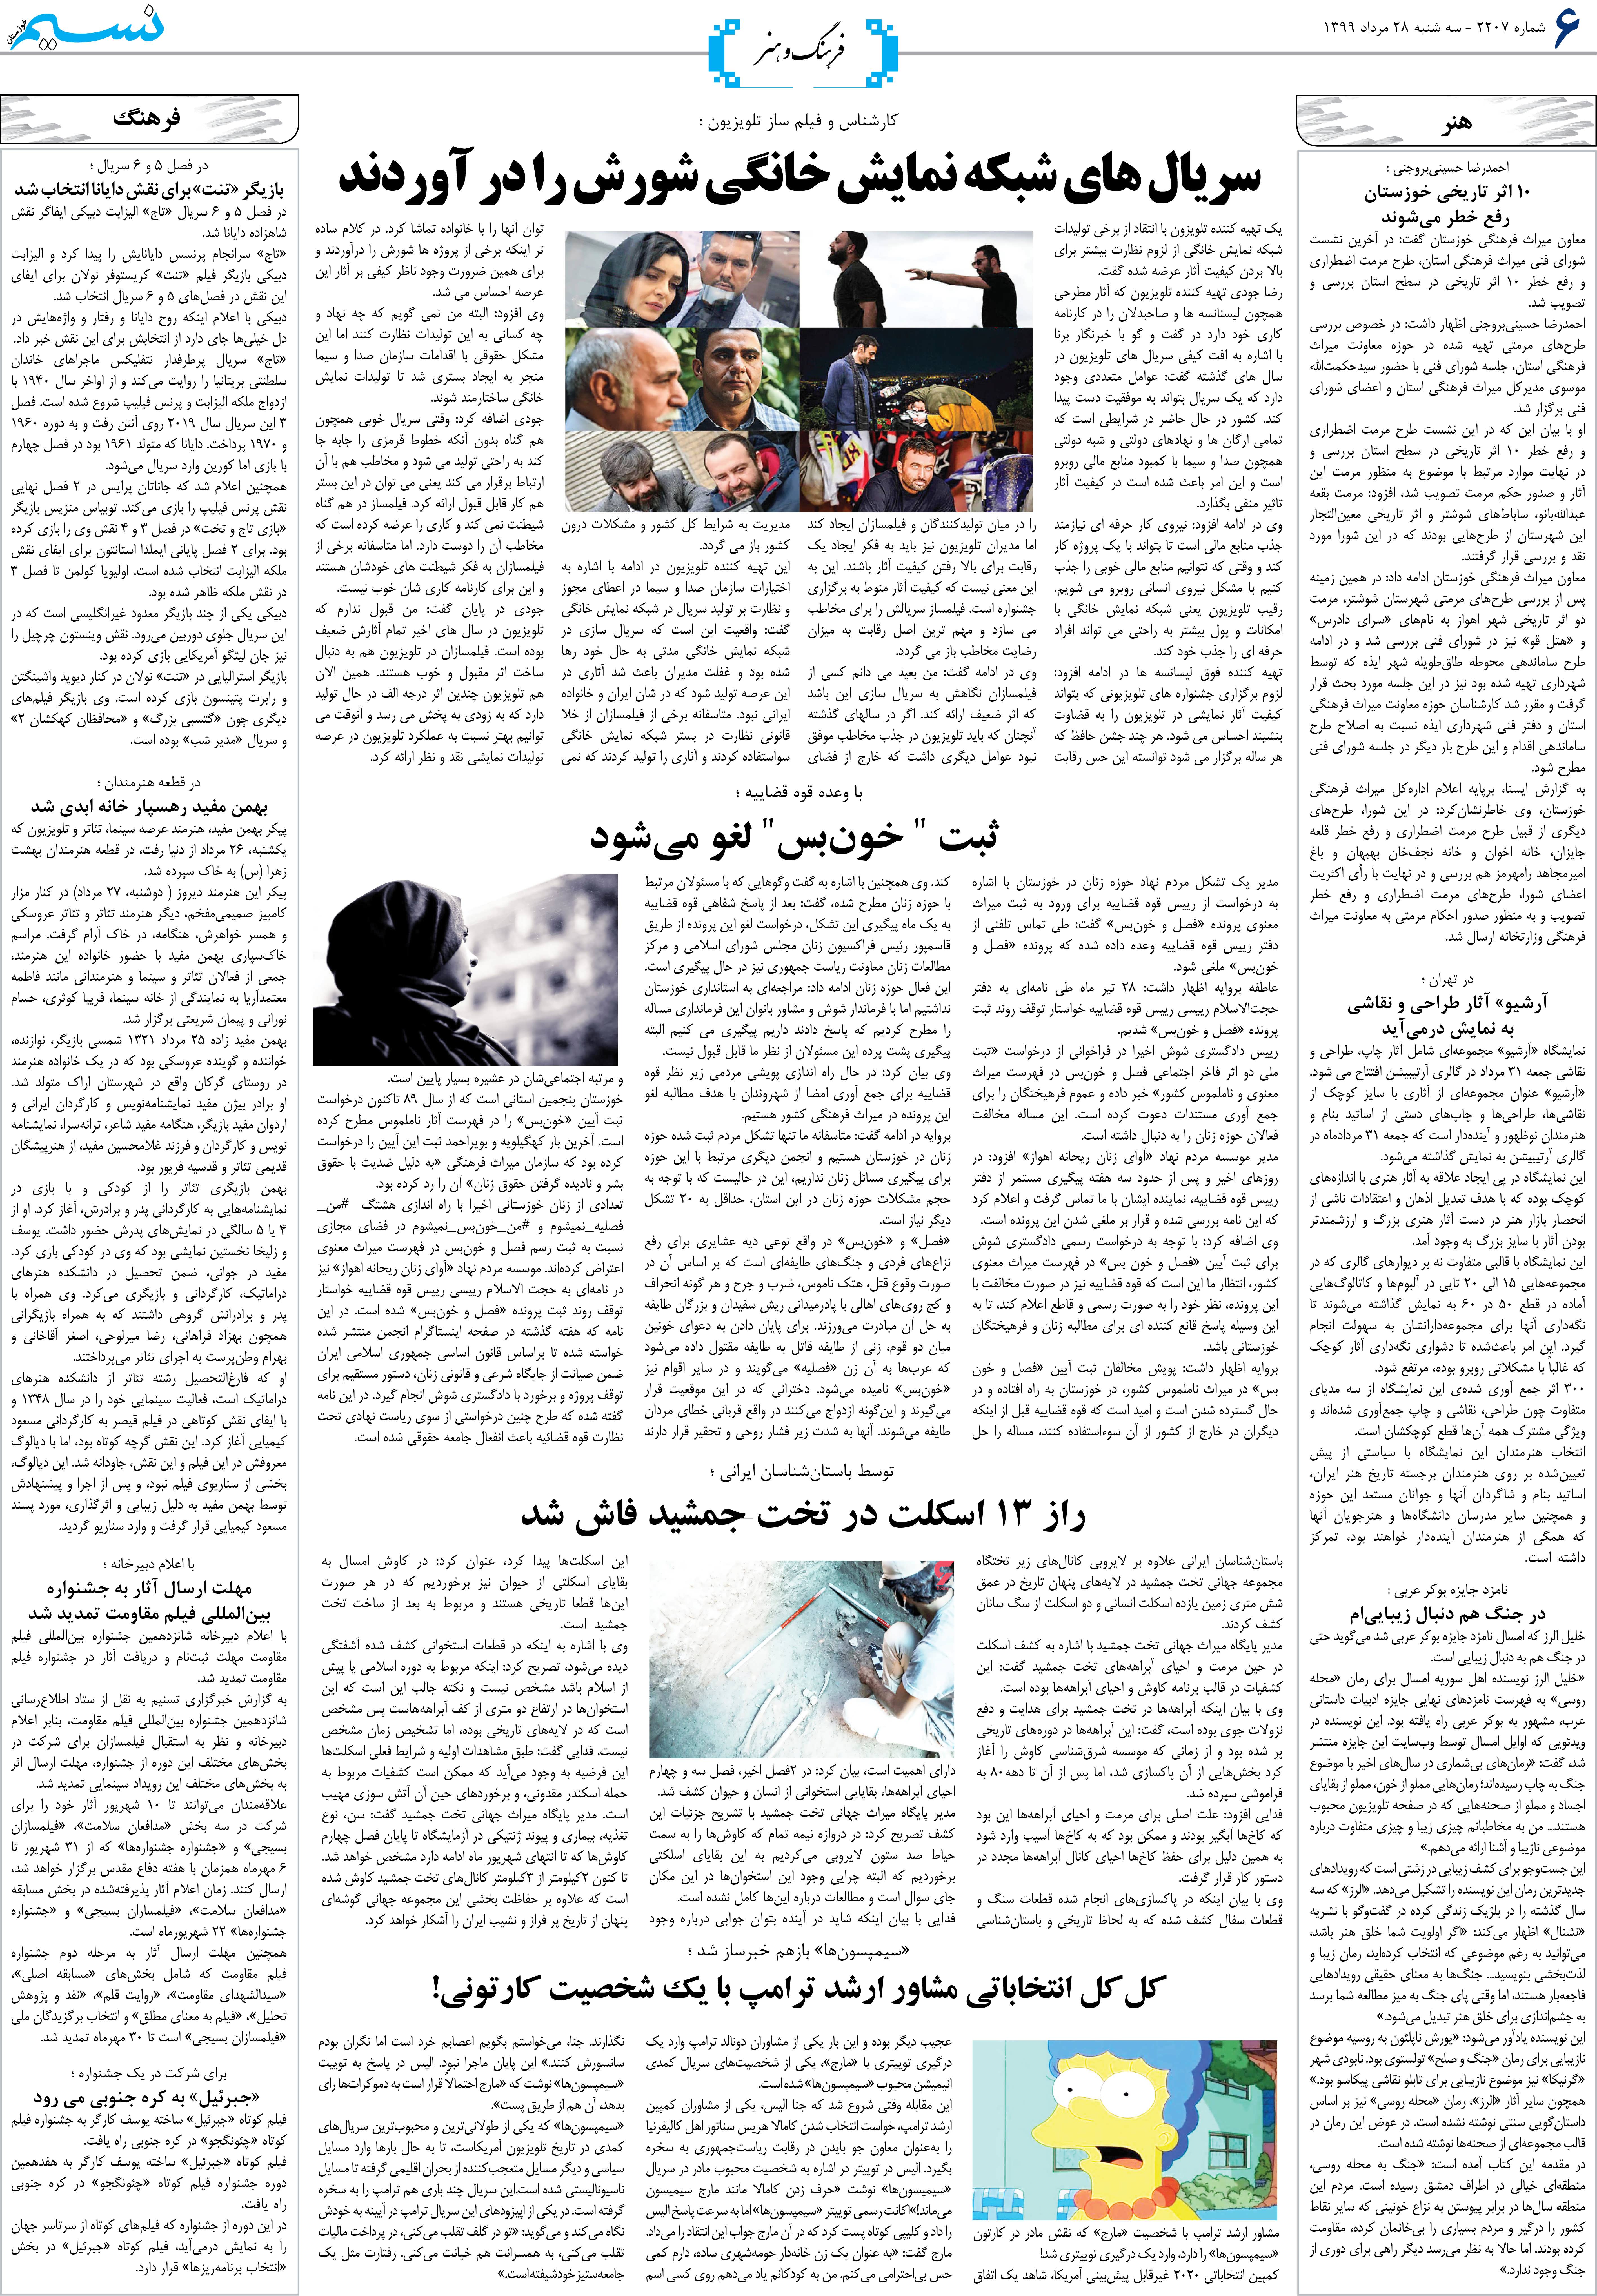 صفحه فرهنگ و هنر روزنامه نسیم شماره 2207